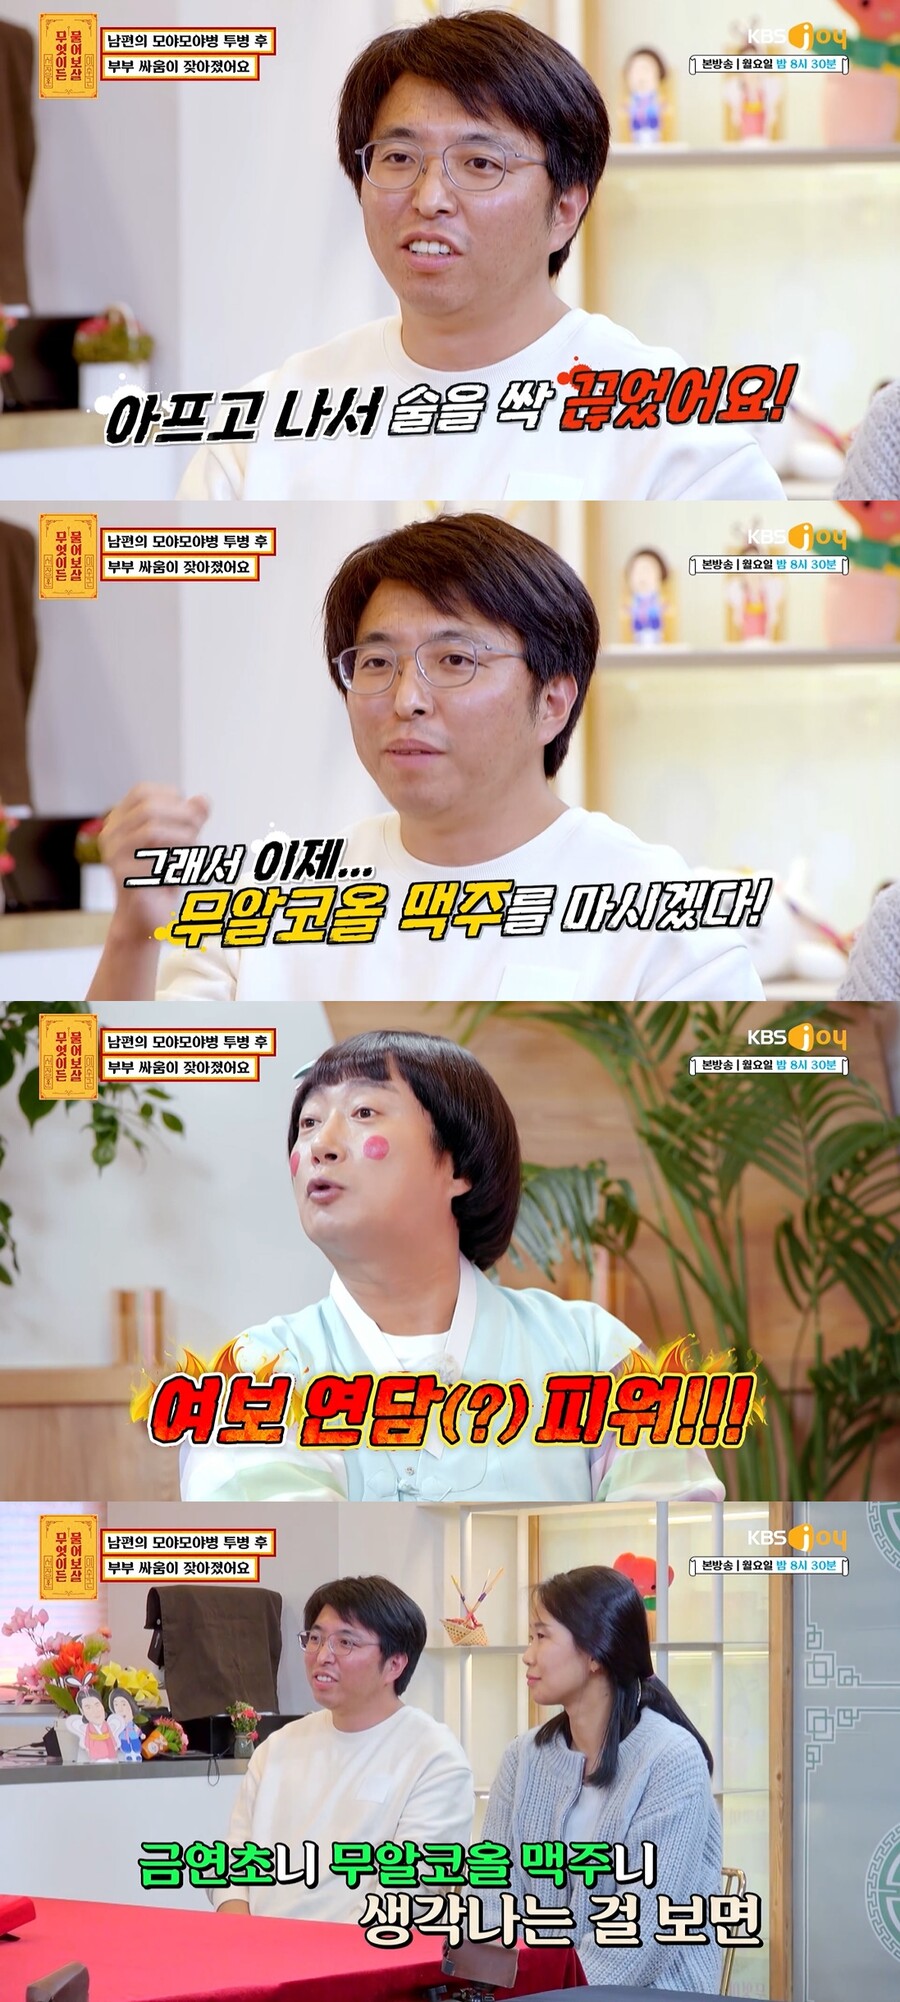 ▲ KBS 조이 예능프로그램 '무엇이든 물어보살' 방송화면. 출처| KBS조이